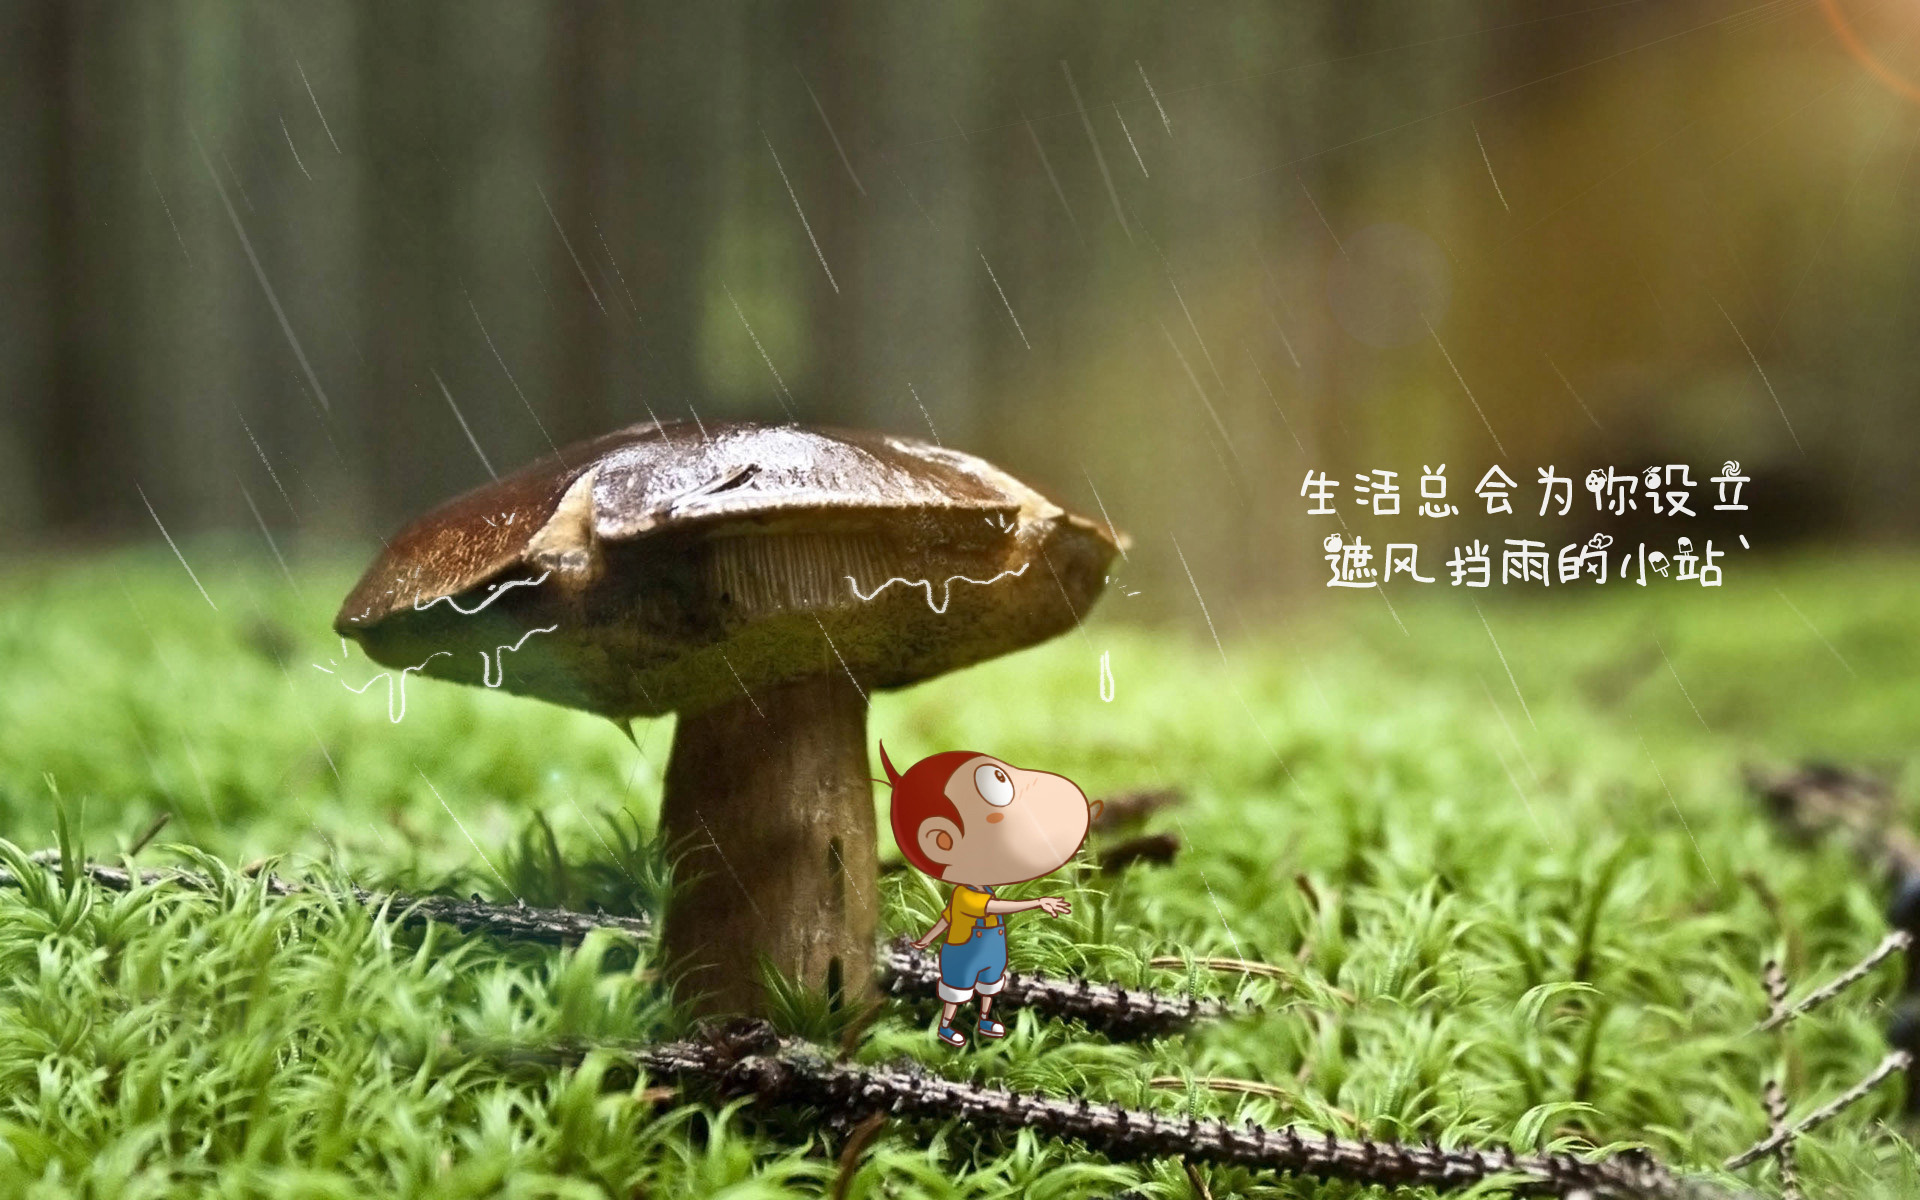 生活图片_蘑菇壁纸下载_遮风挡雨高清大图_小站高清图片壁纸